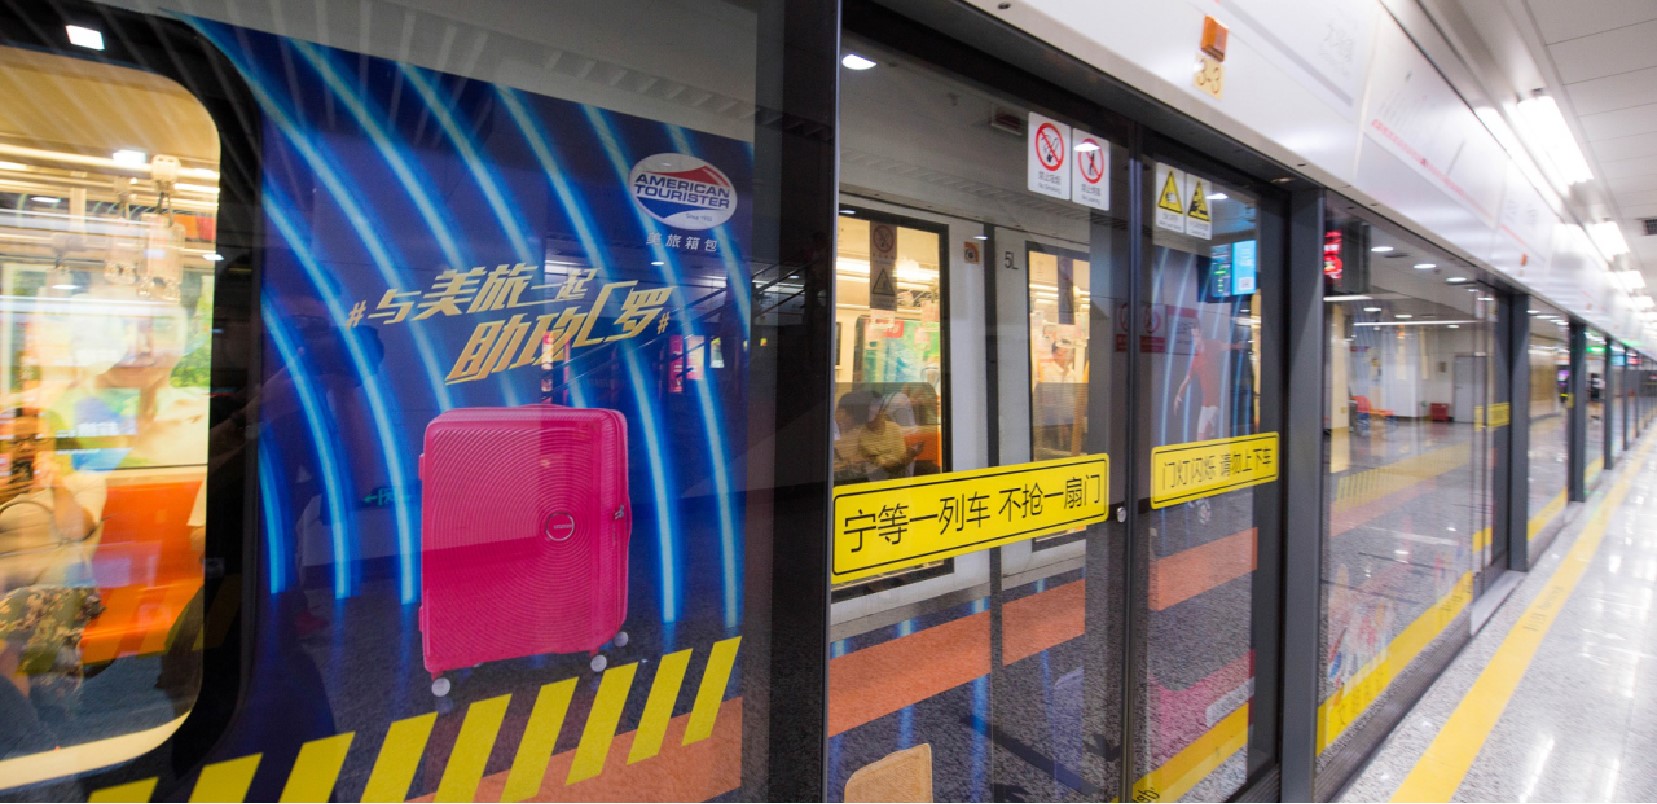 上海地铁7号线车厢广告